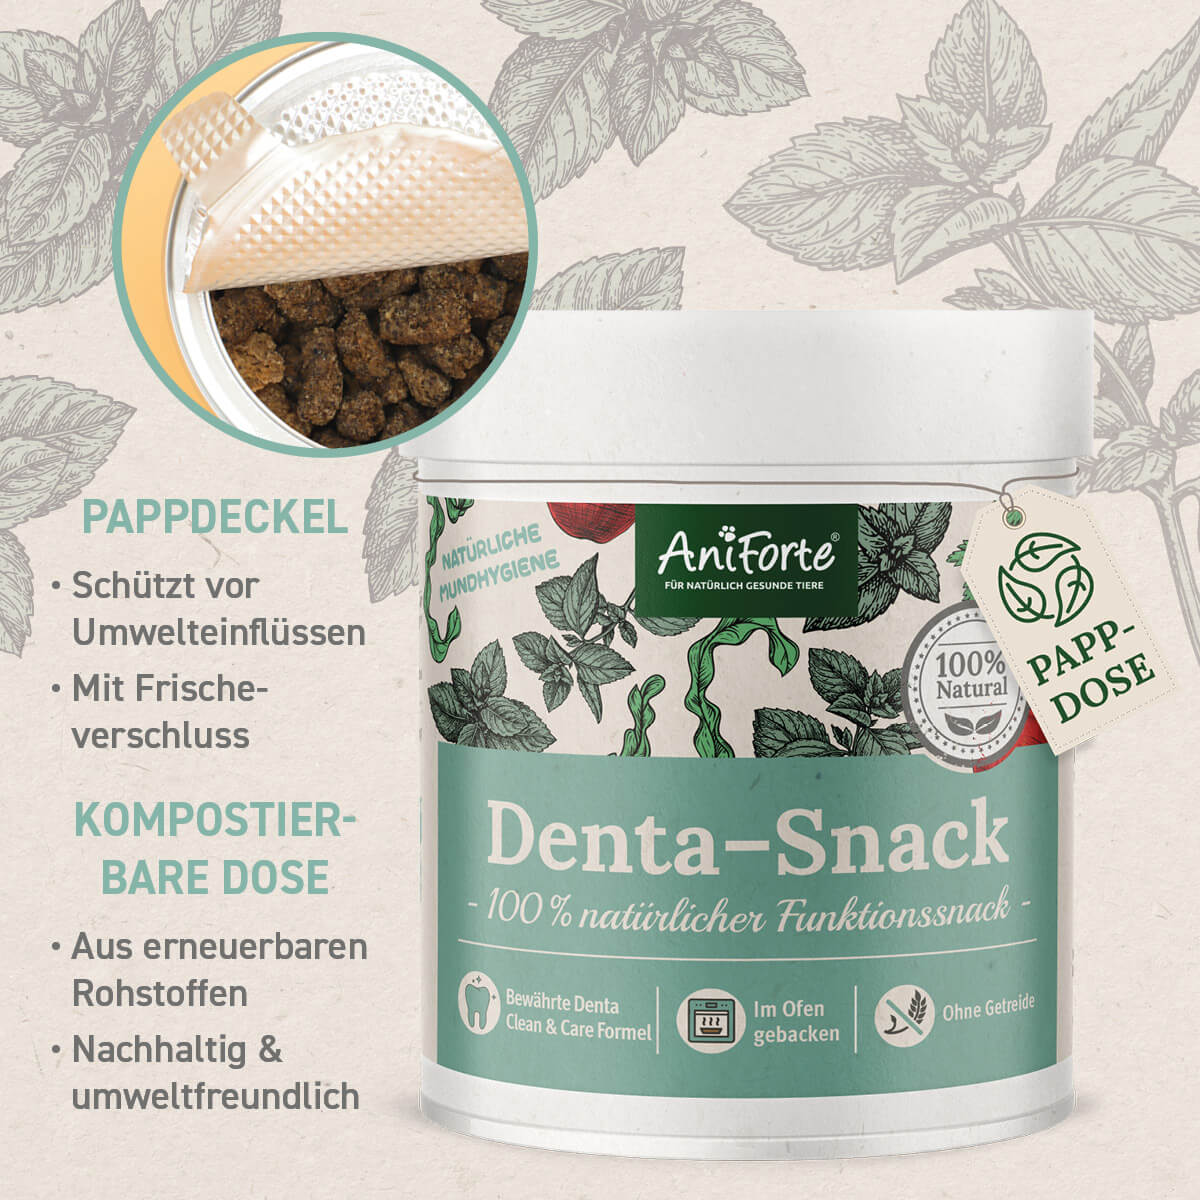 Denta-Snack besteht aus Pappdeckel mit Frischeverschluss und nachhaltig kompostierbarer Dose - AniForte